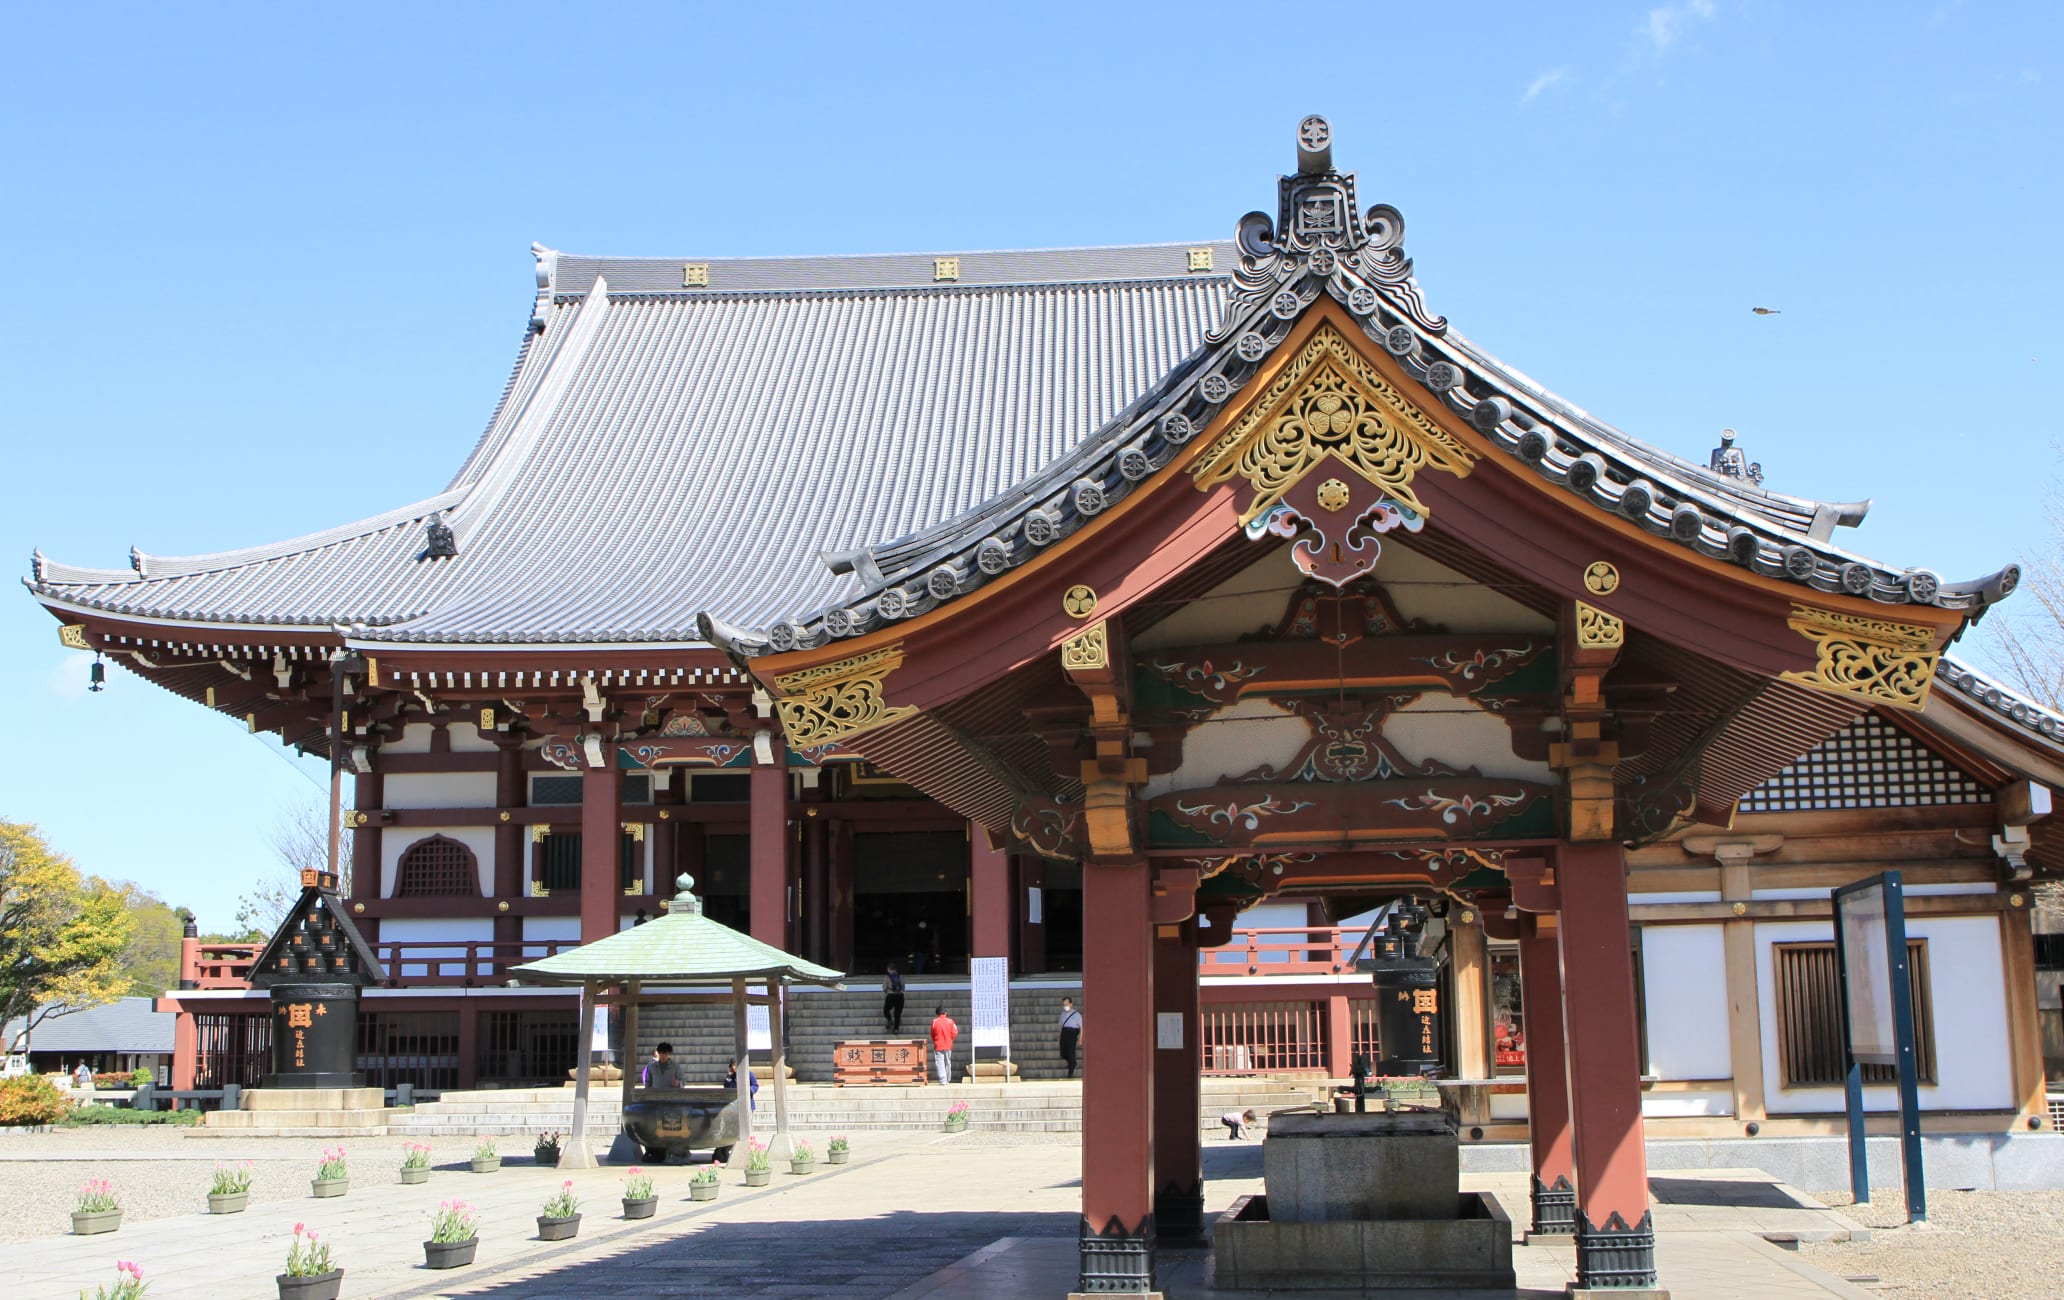 Ikegami-Honmon-ji Temple